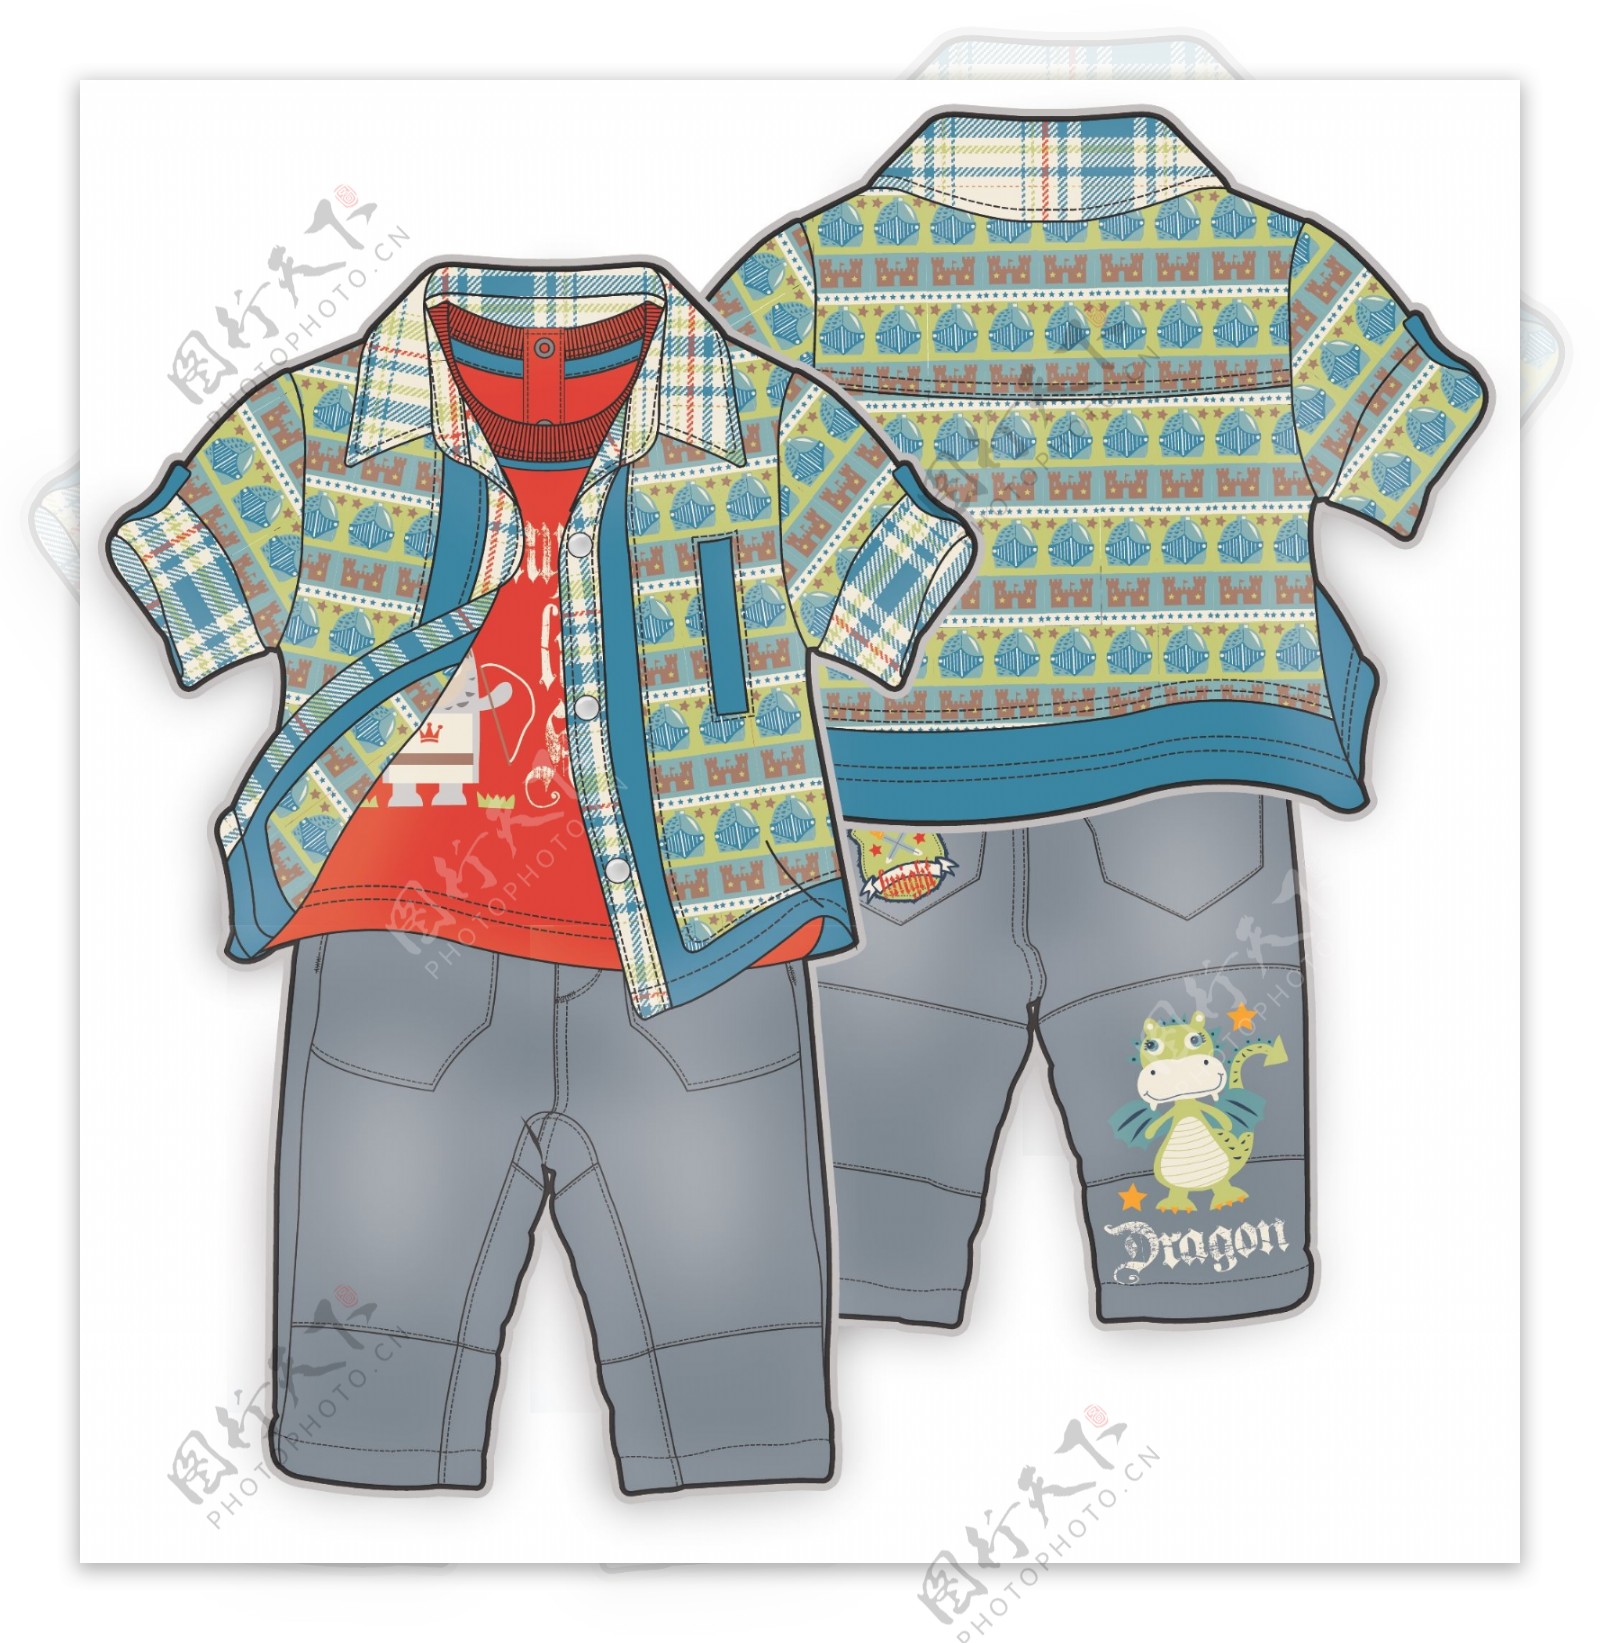 花纹套装婴儿服装彩色设计矢量素材